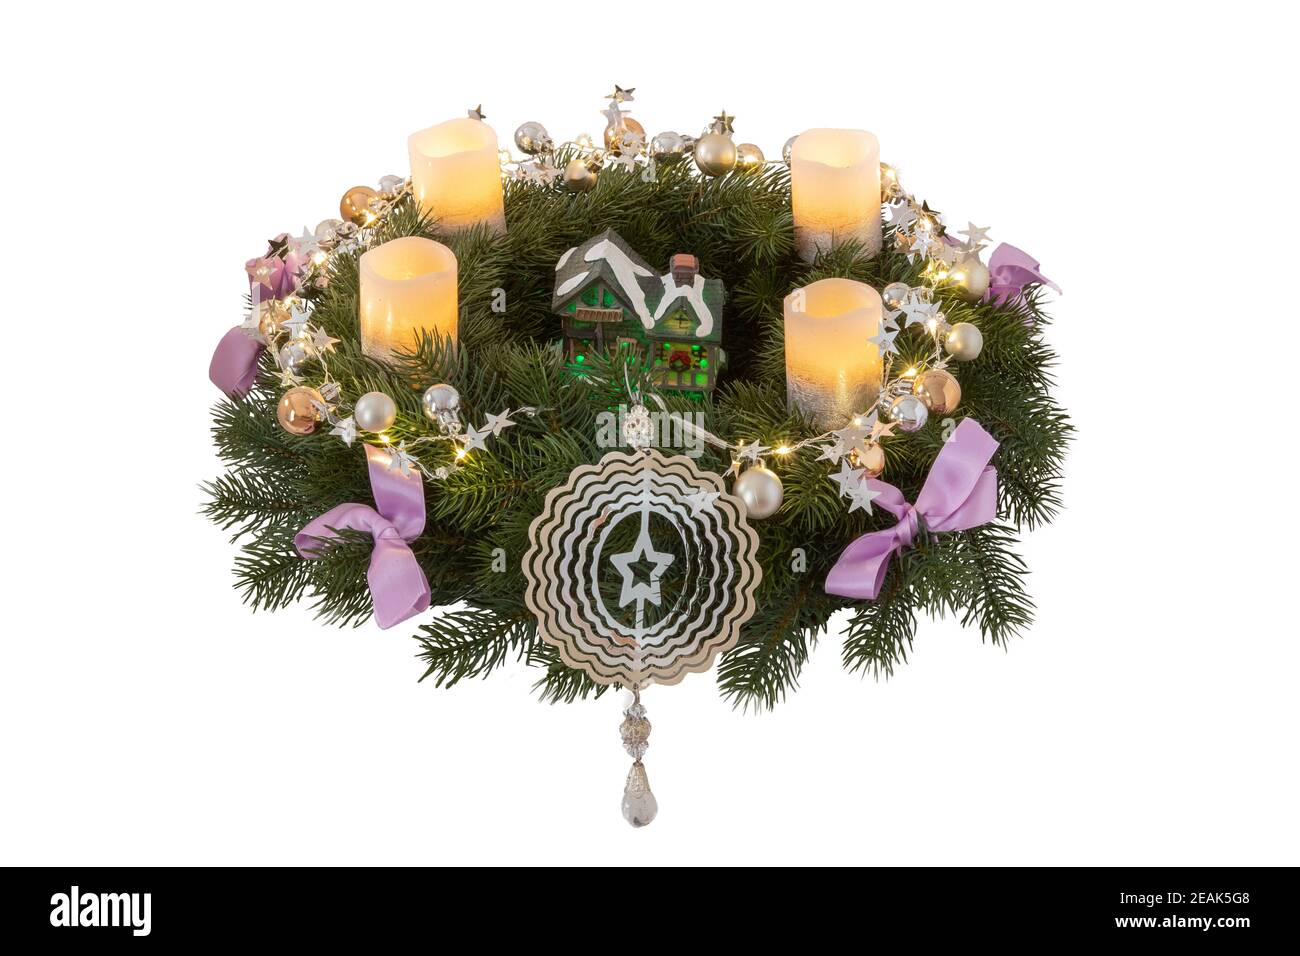 Weihnachtskränze. Nahaufnahme eines schönen bunten weihnachtskranzes mit Kerzen und Dekorationselementen und verschiedenen Lichtern isoliert auf weißem Hintergrund. Stockfoto